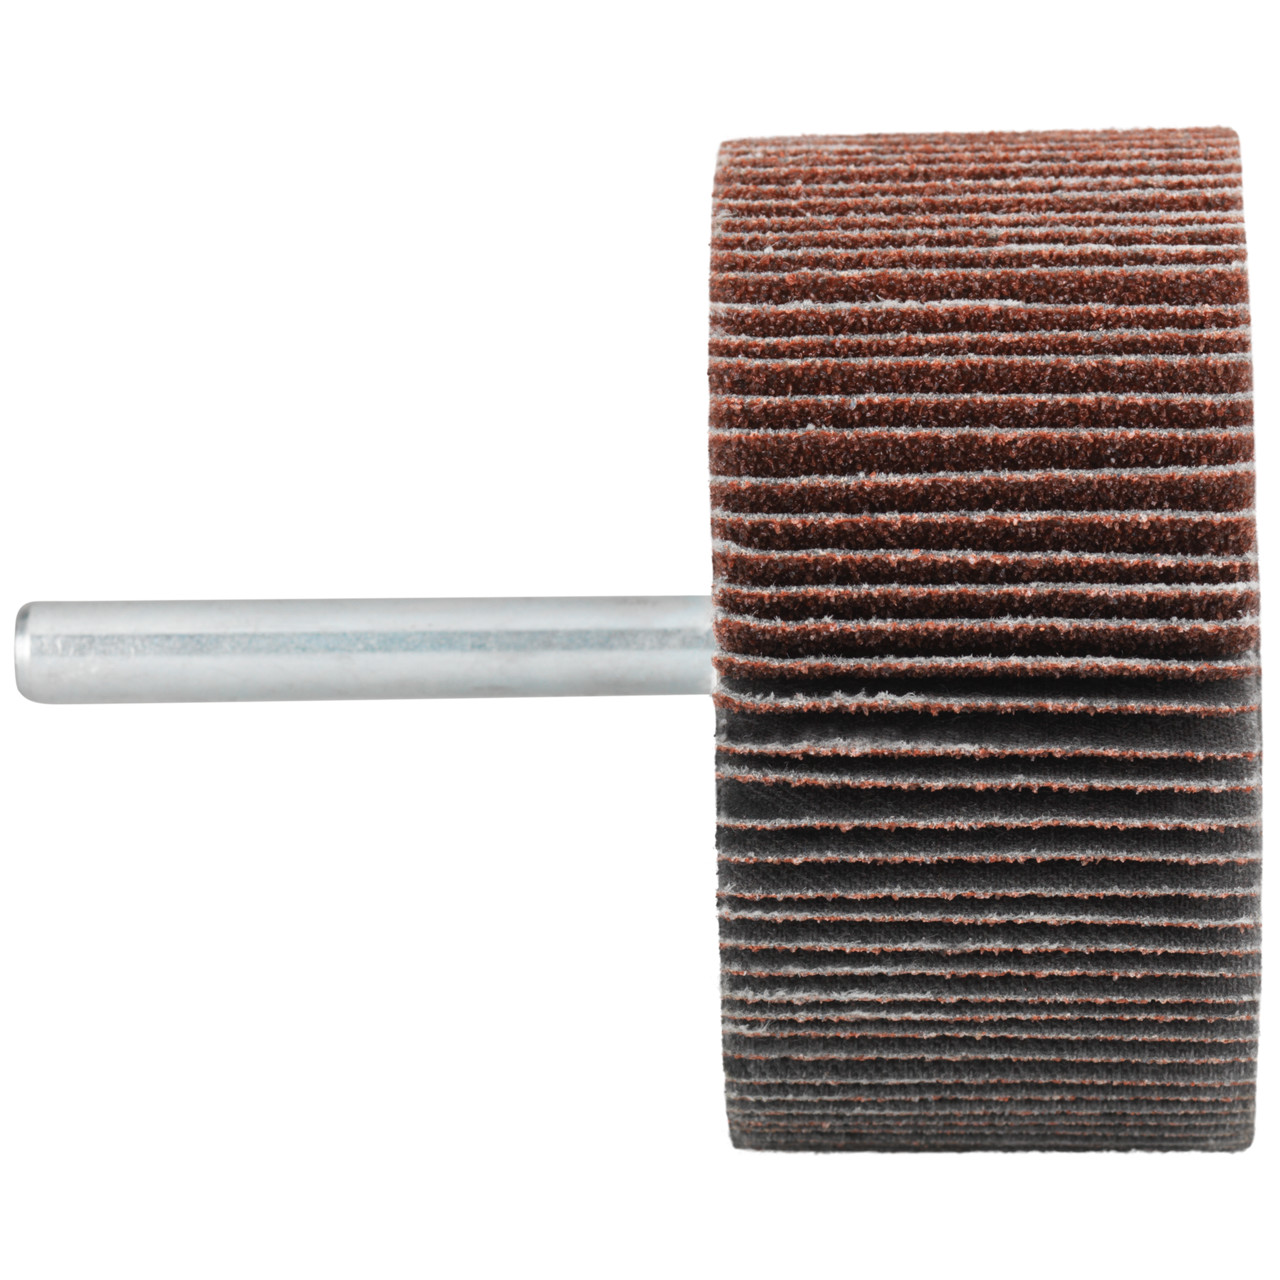 Tyrolit A-P01 C X Pennen DxD 30x10 Voor staal, roestvast staal en non-ferrometalen, P240, vorm: 52LA, Art. 816874